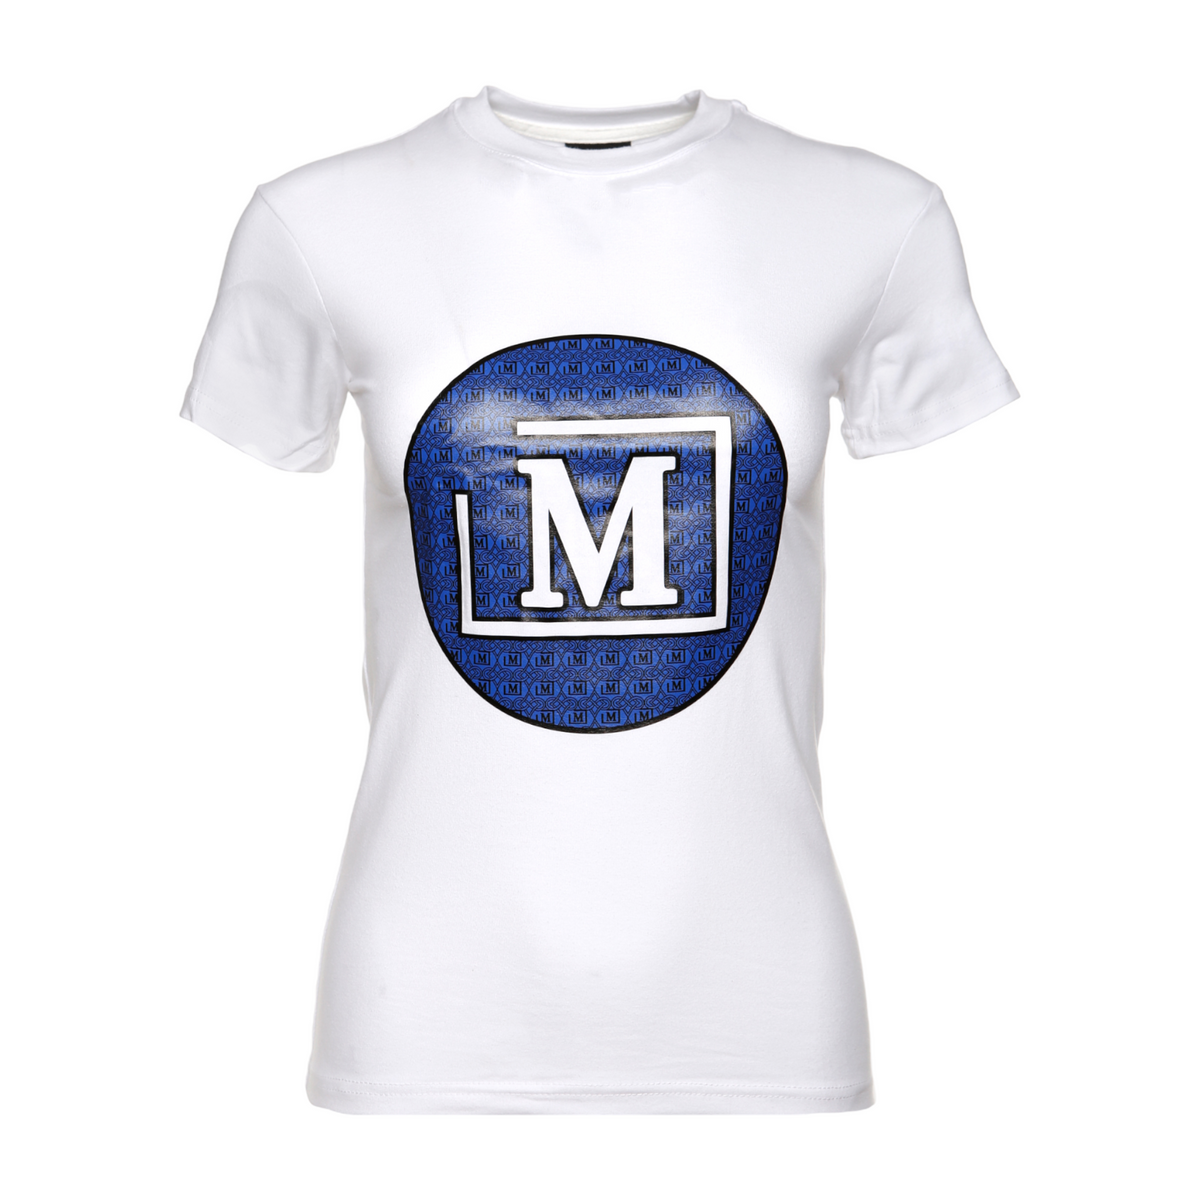 MDB Brand Women's Summer Circle AOP Logo T-Shirt White